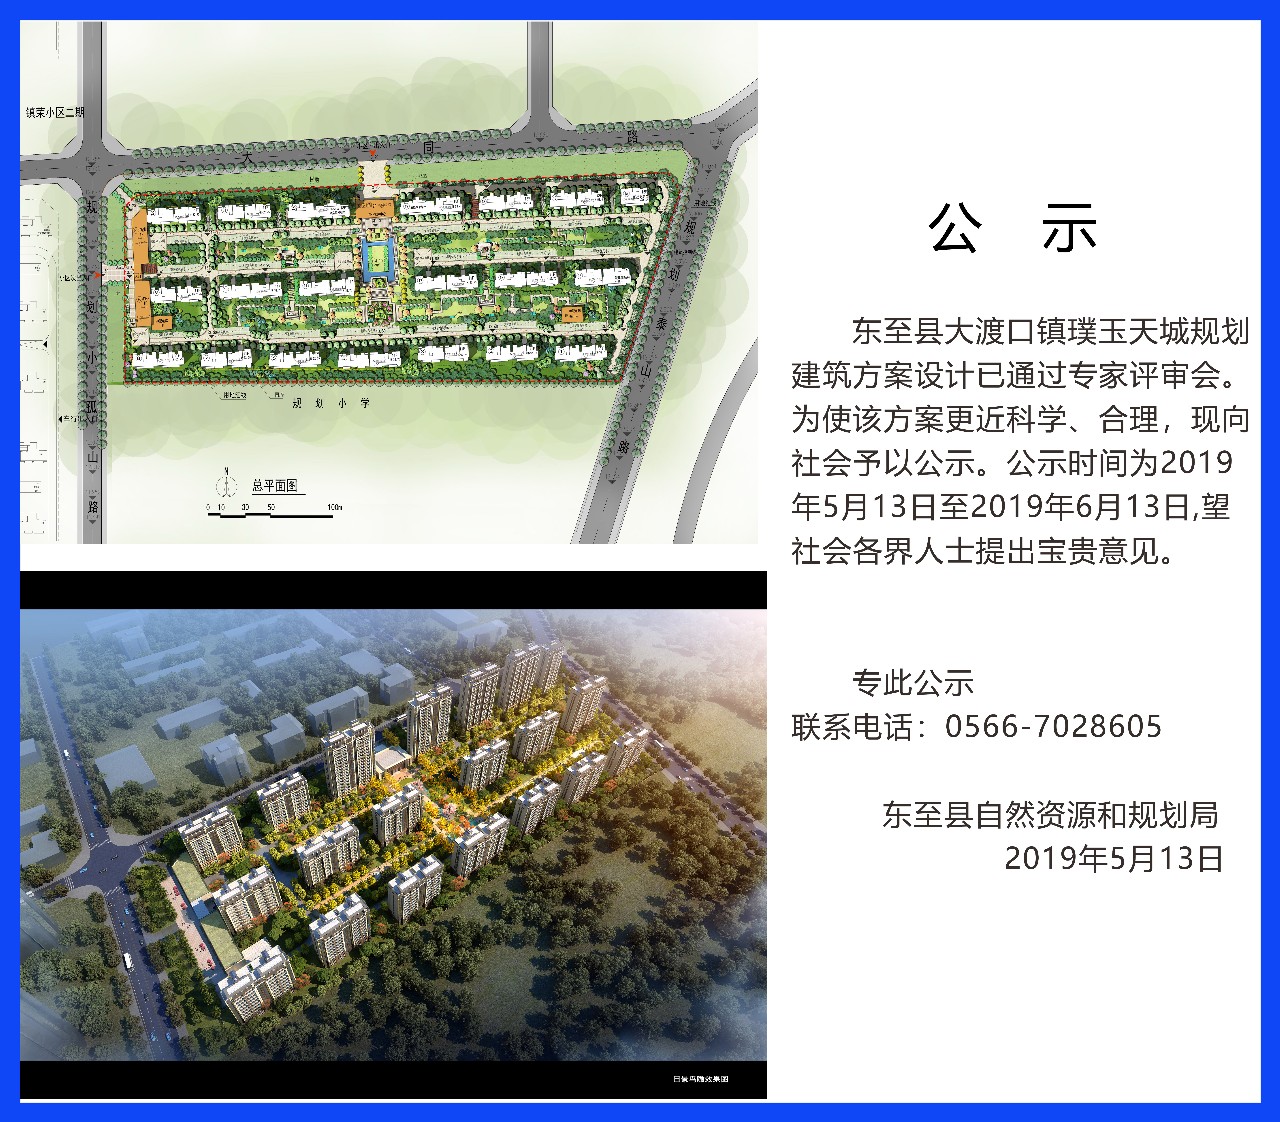 东至县大渡口璞玉天城规划建筑方案设计公示